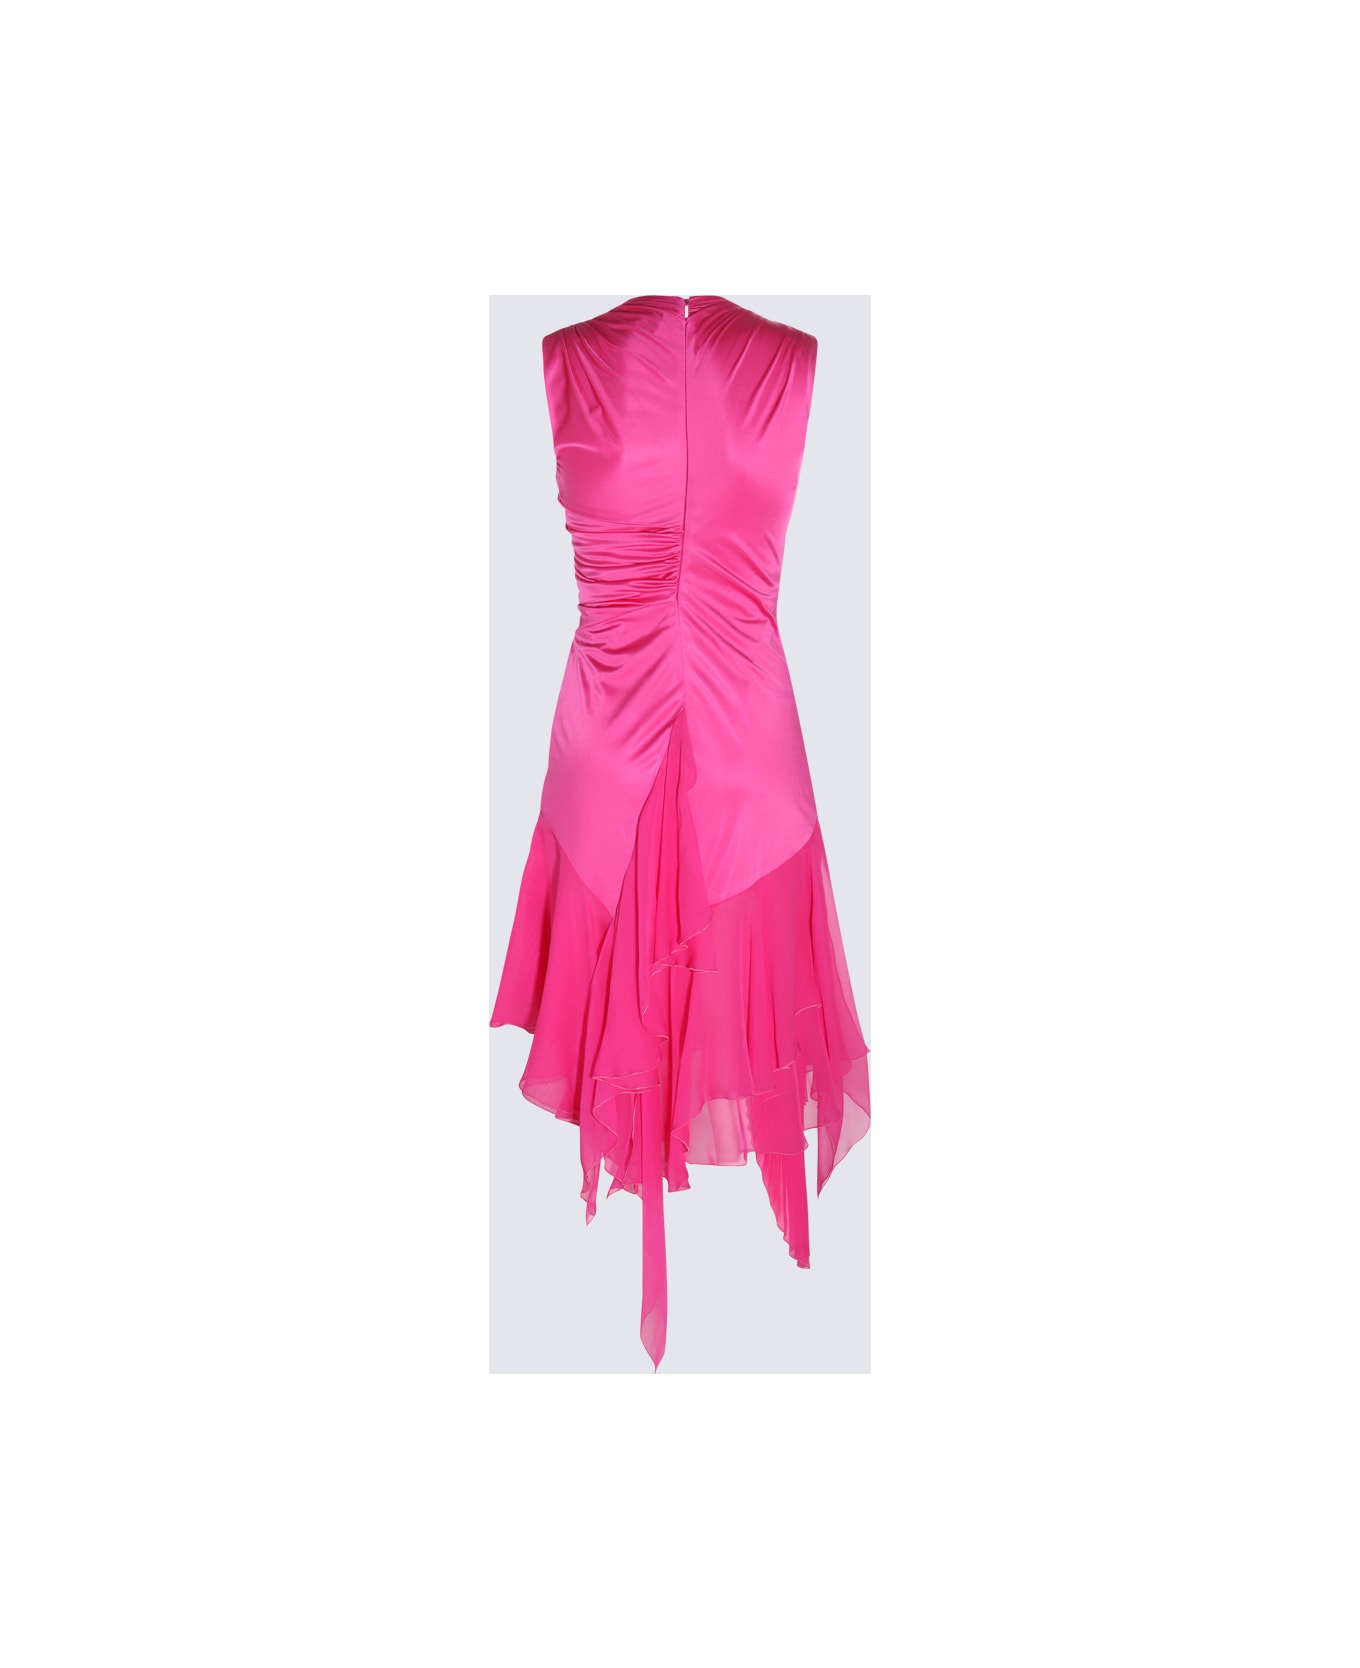 Versace Glossy Pink Viscose Dress - GLOSSY PINK